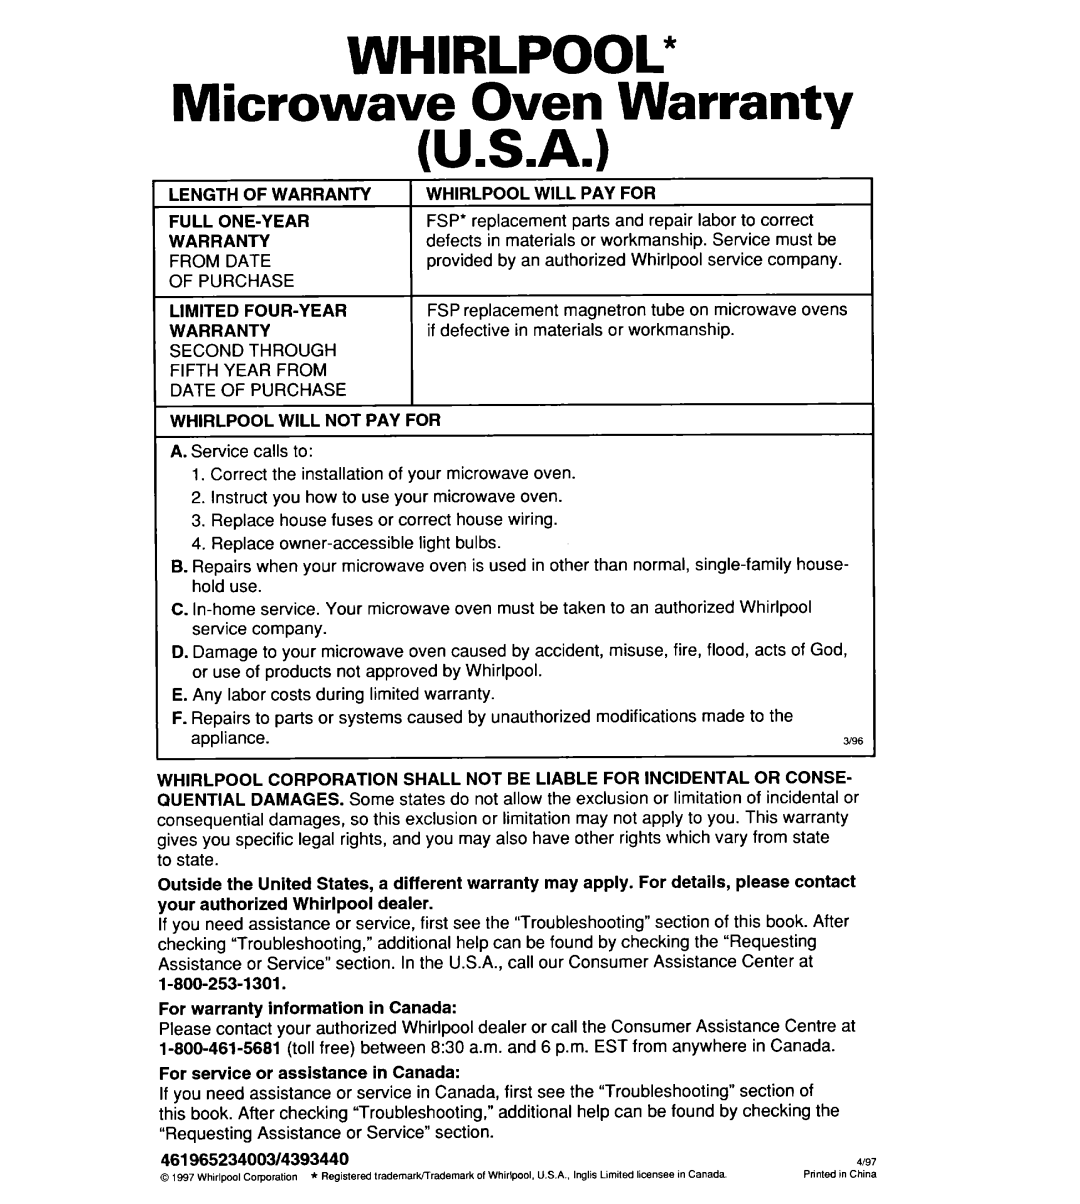 Whirlpool YMT8078SE, YMT9114SF, MT8118XE, MT8116XE, YMT8116SE, YMT8076SE, YMT8118SE WHIRLPOOL” Microwave Oven Warranty U.S.A 